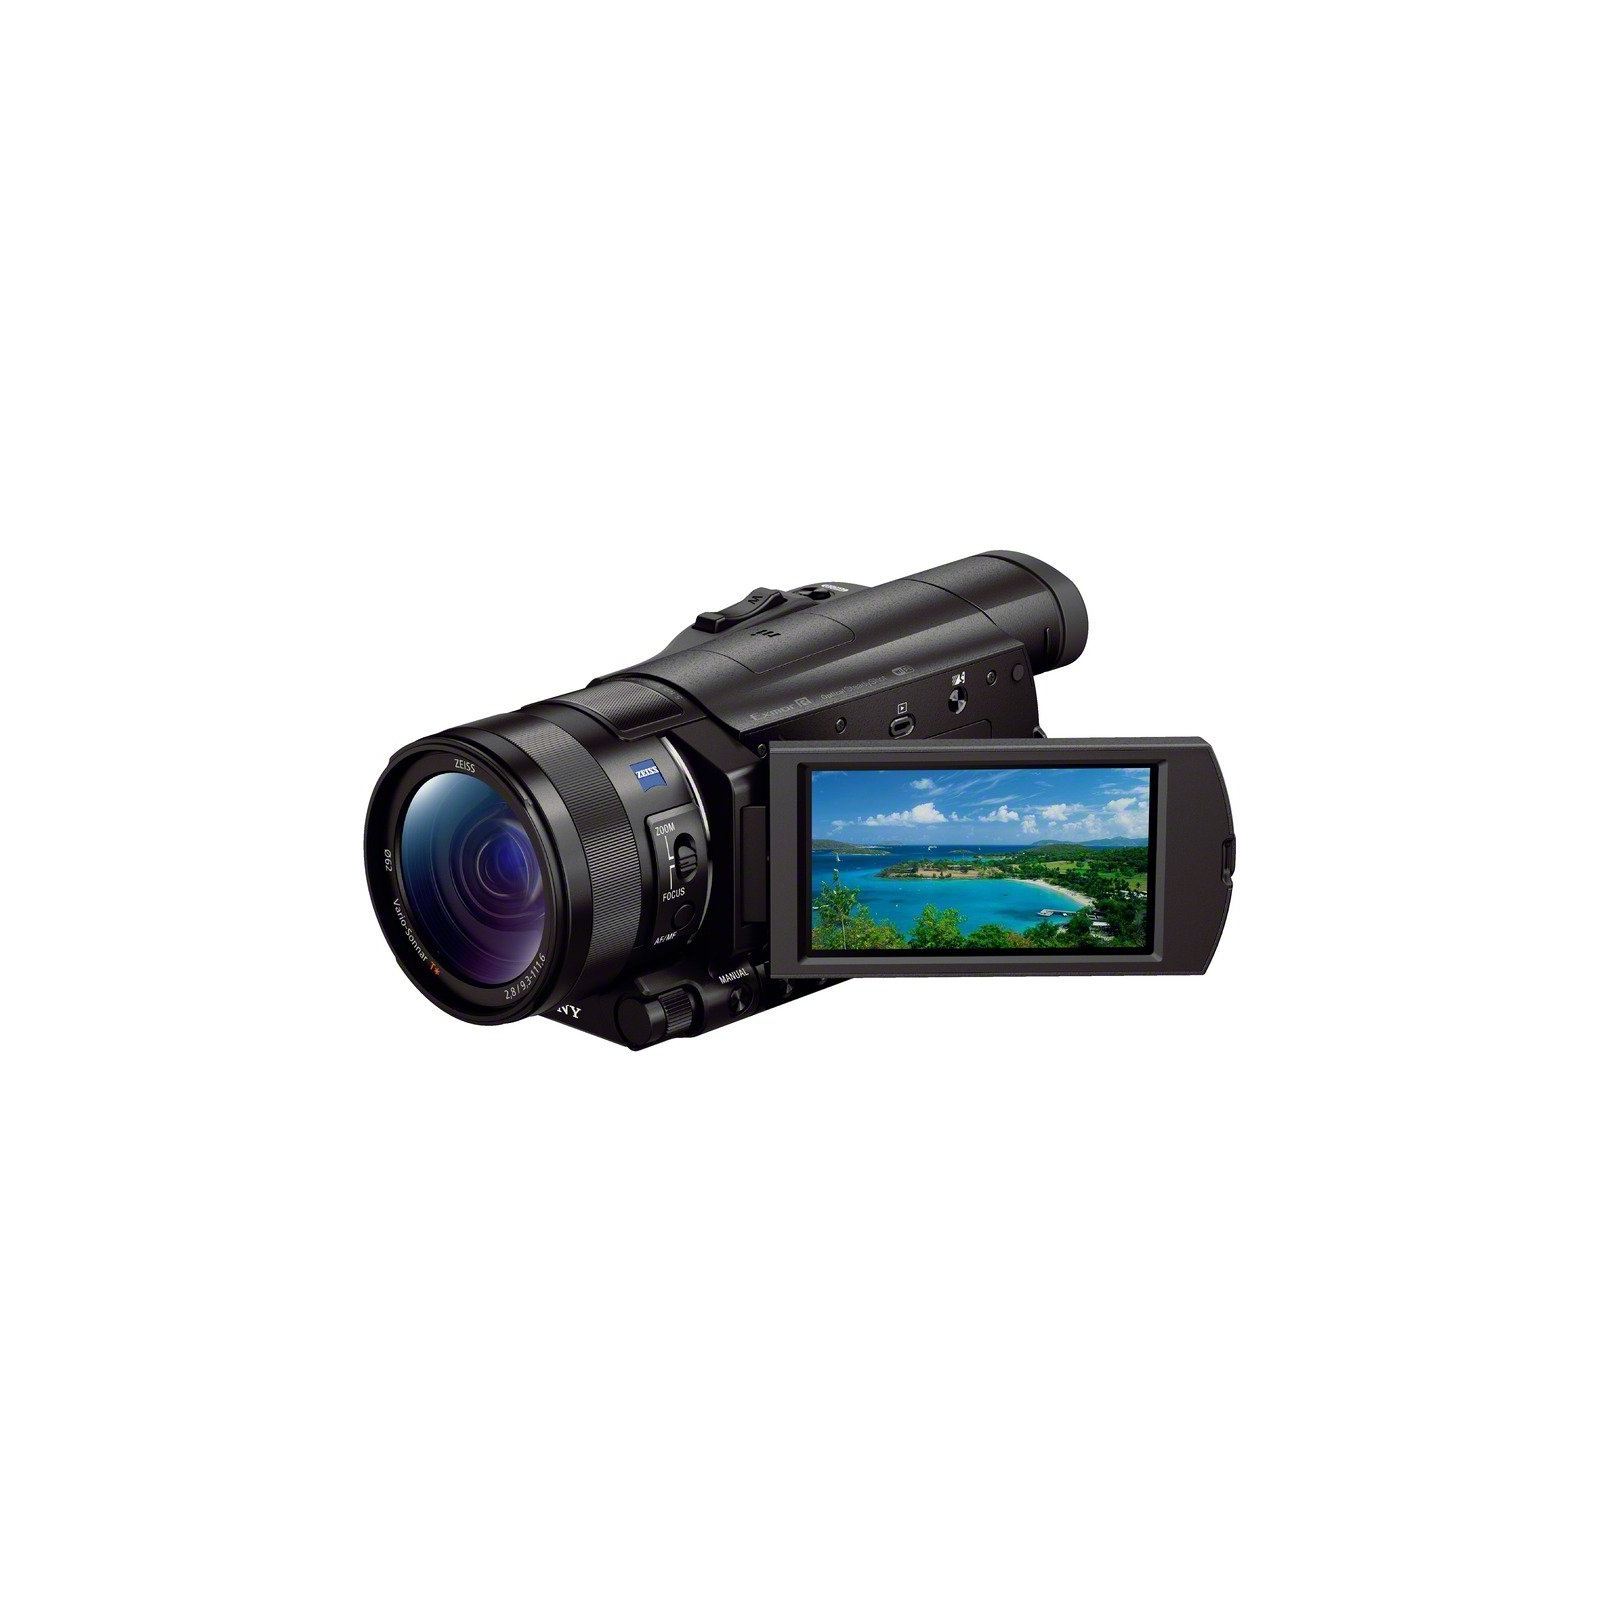 Цифровая видеокамера Sony Handycam FDR-AX100 Black (FDRAX100EB.CEE) изображение 5